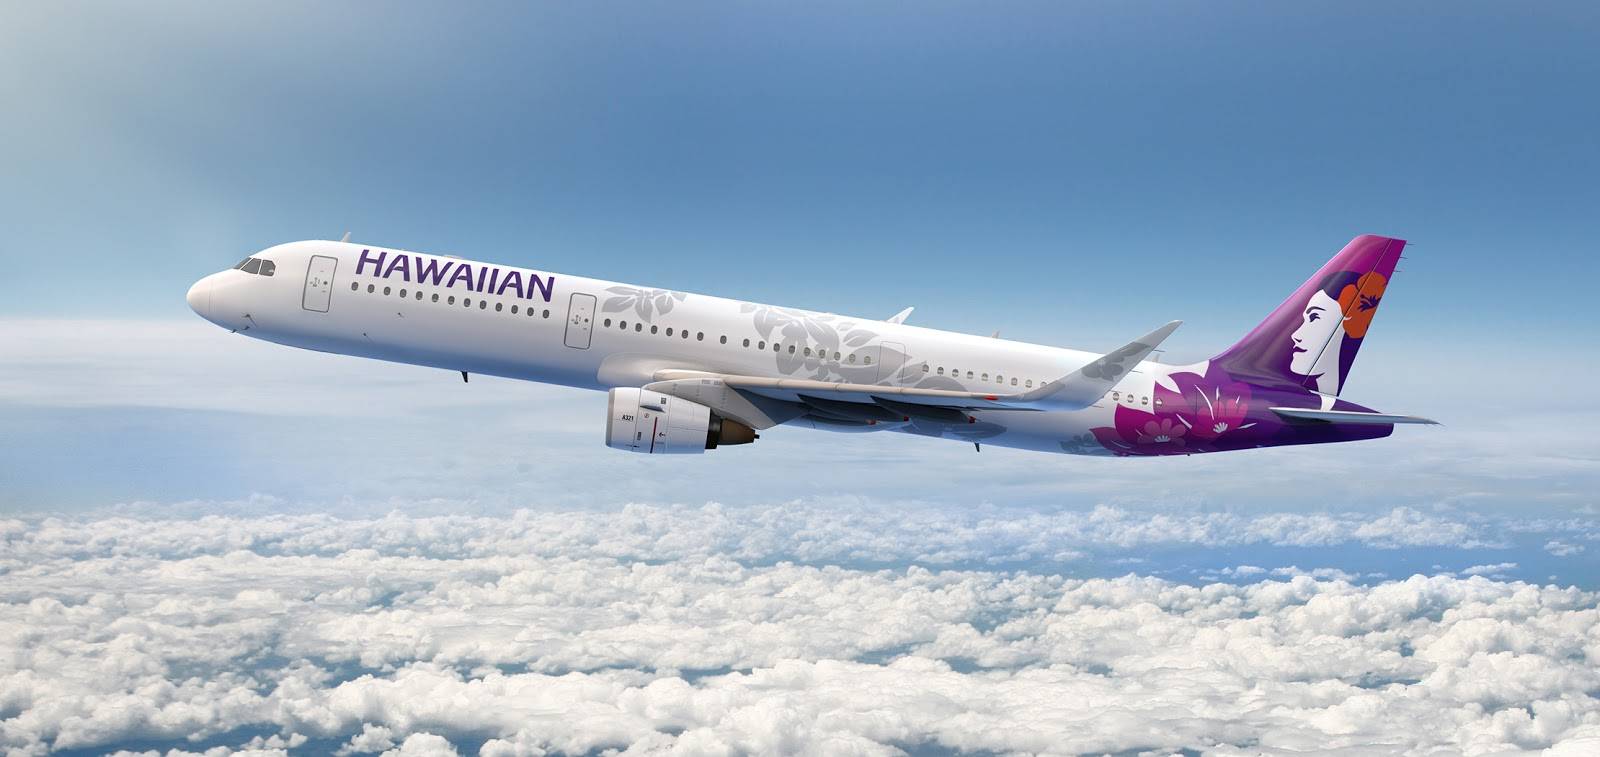 Гавайские авиалинии авиакомпания - официальный сайт hawaiian airlines, контакты, авиабилеты и расписание рейсов  2021